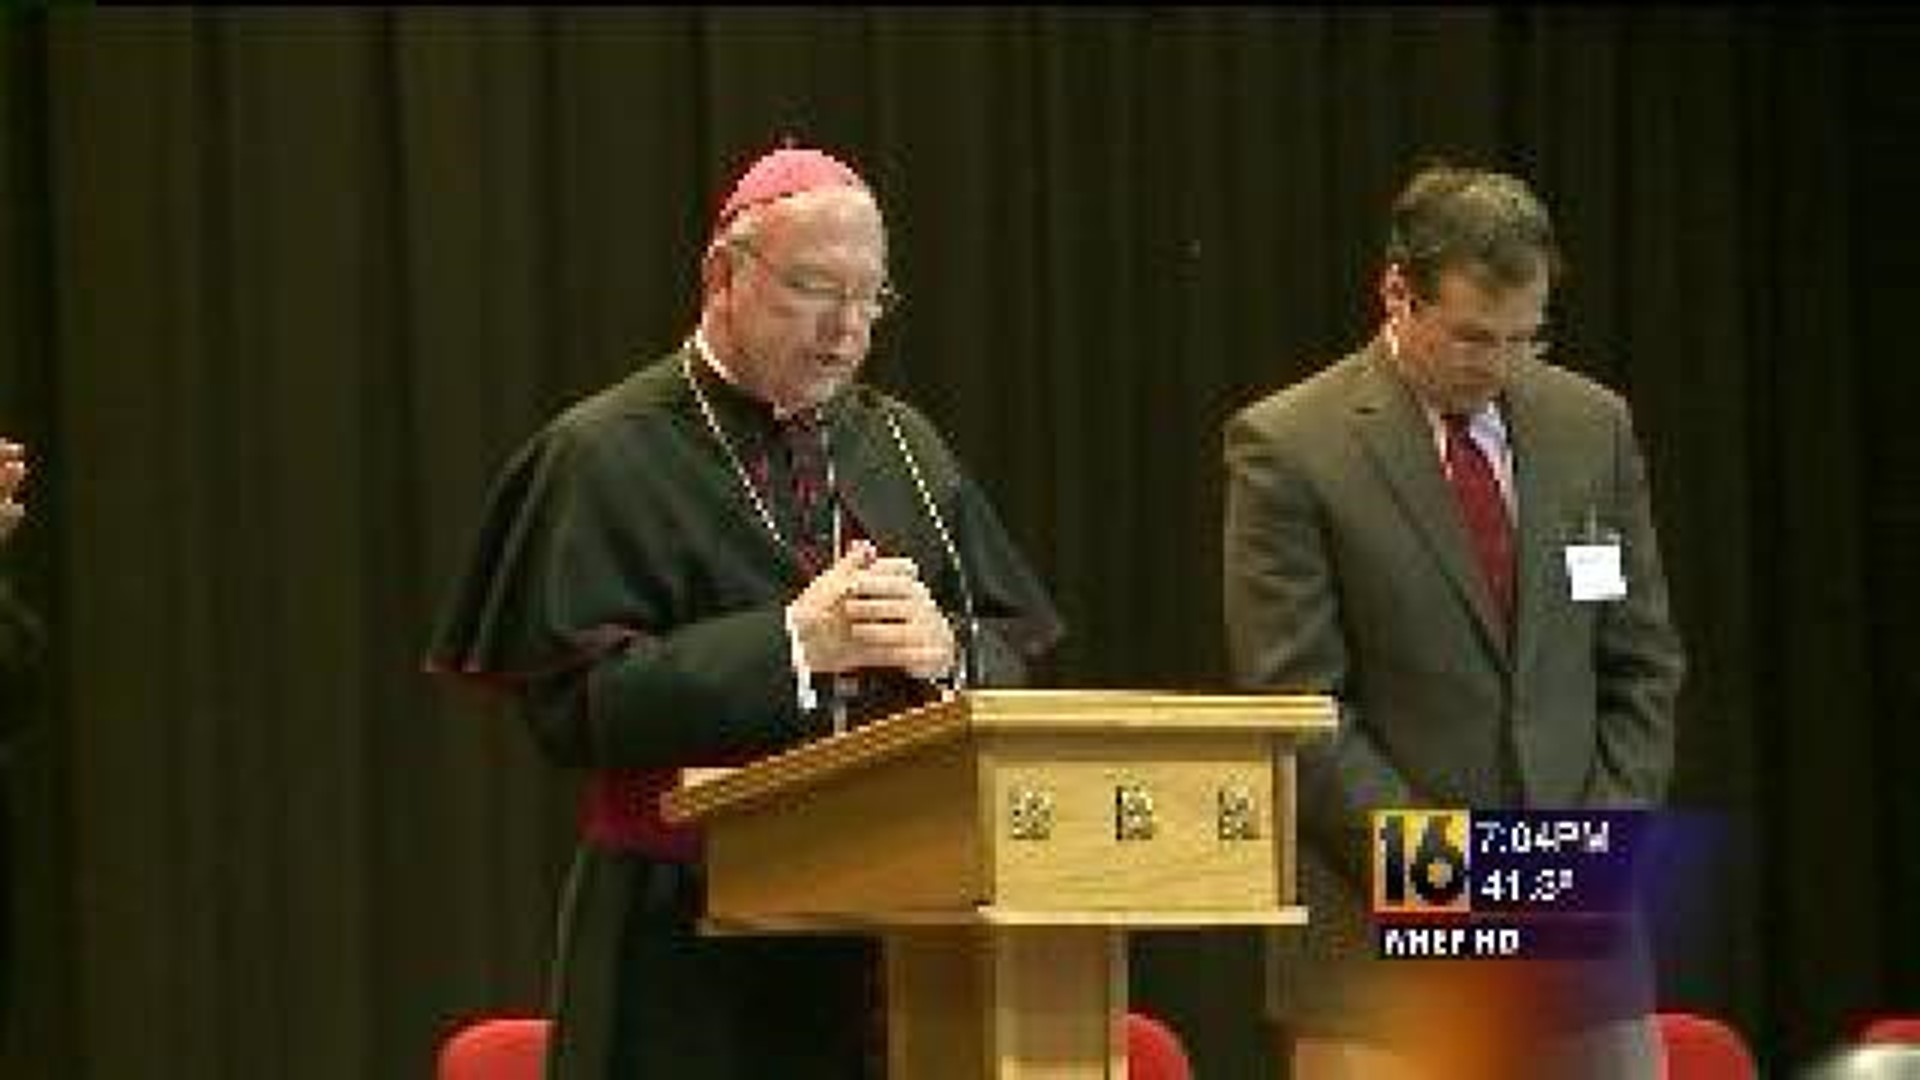 Bishop Speaks About School Shooting